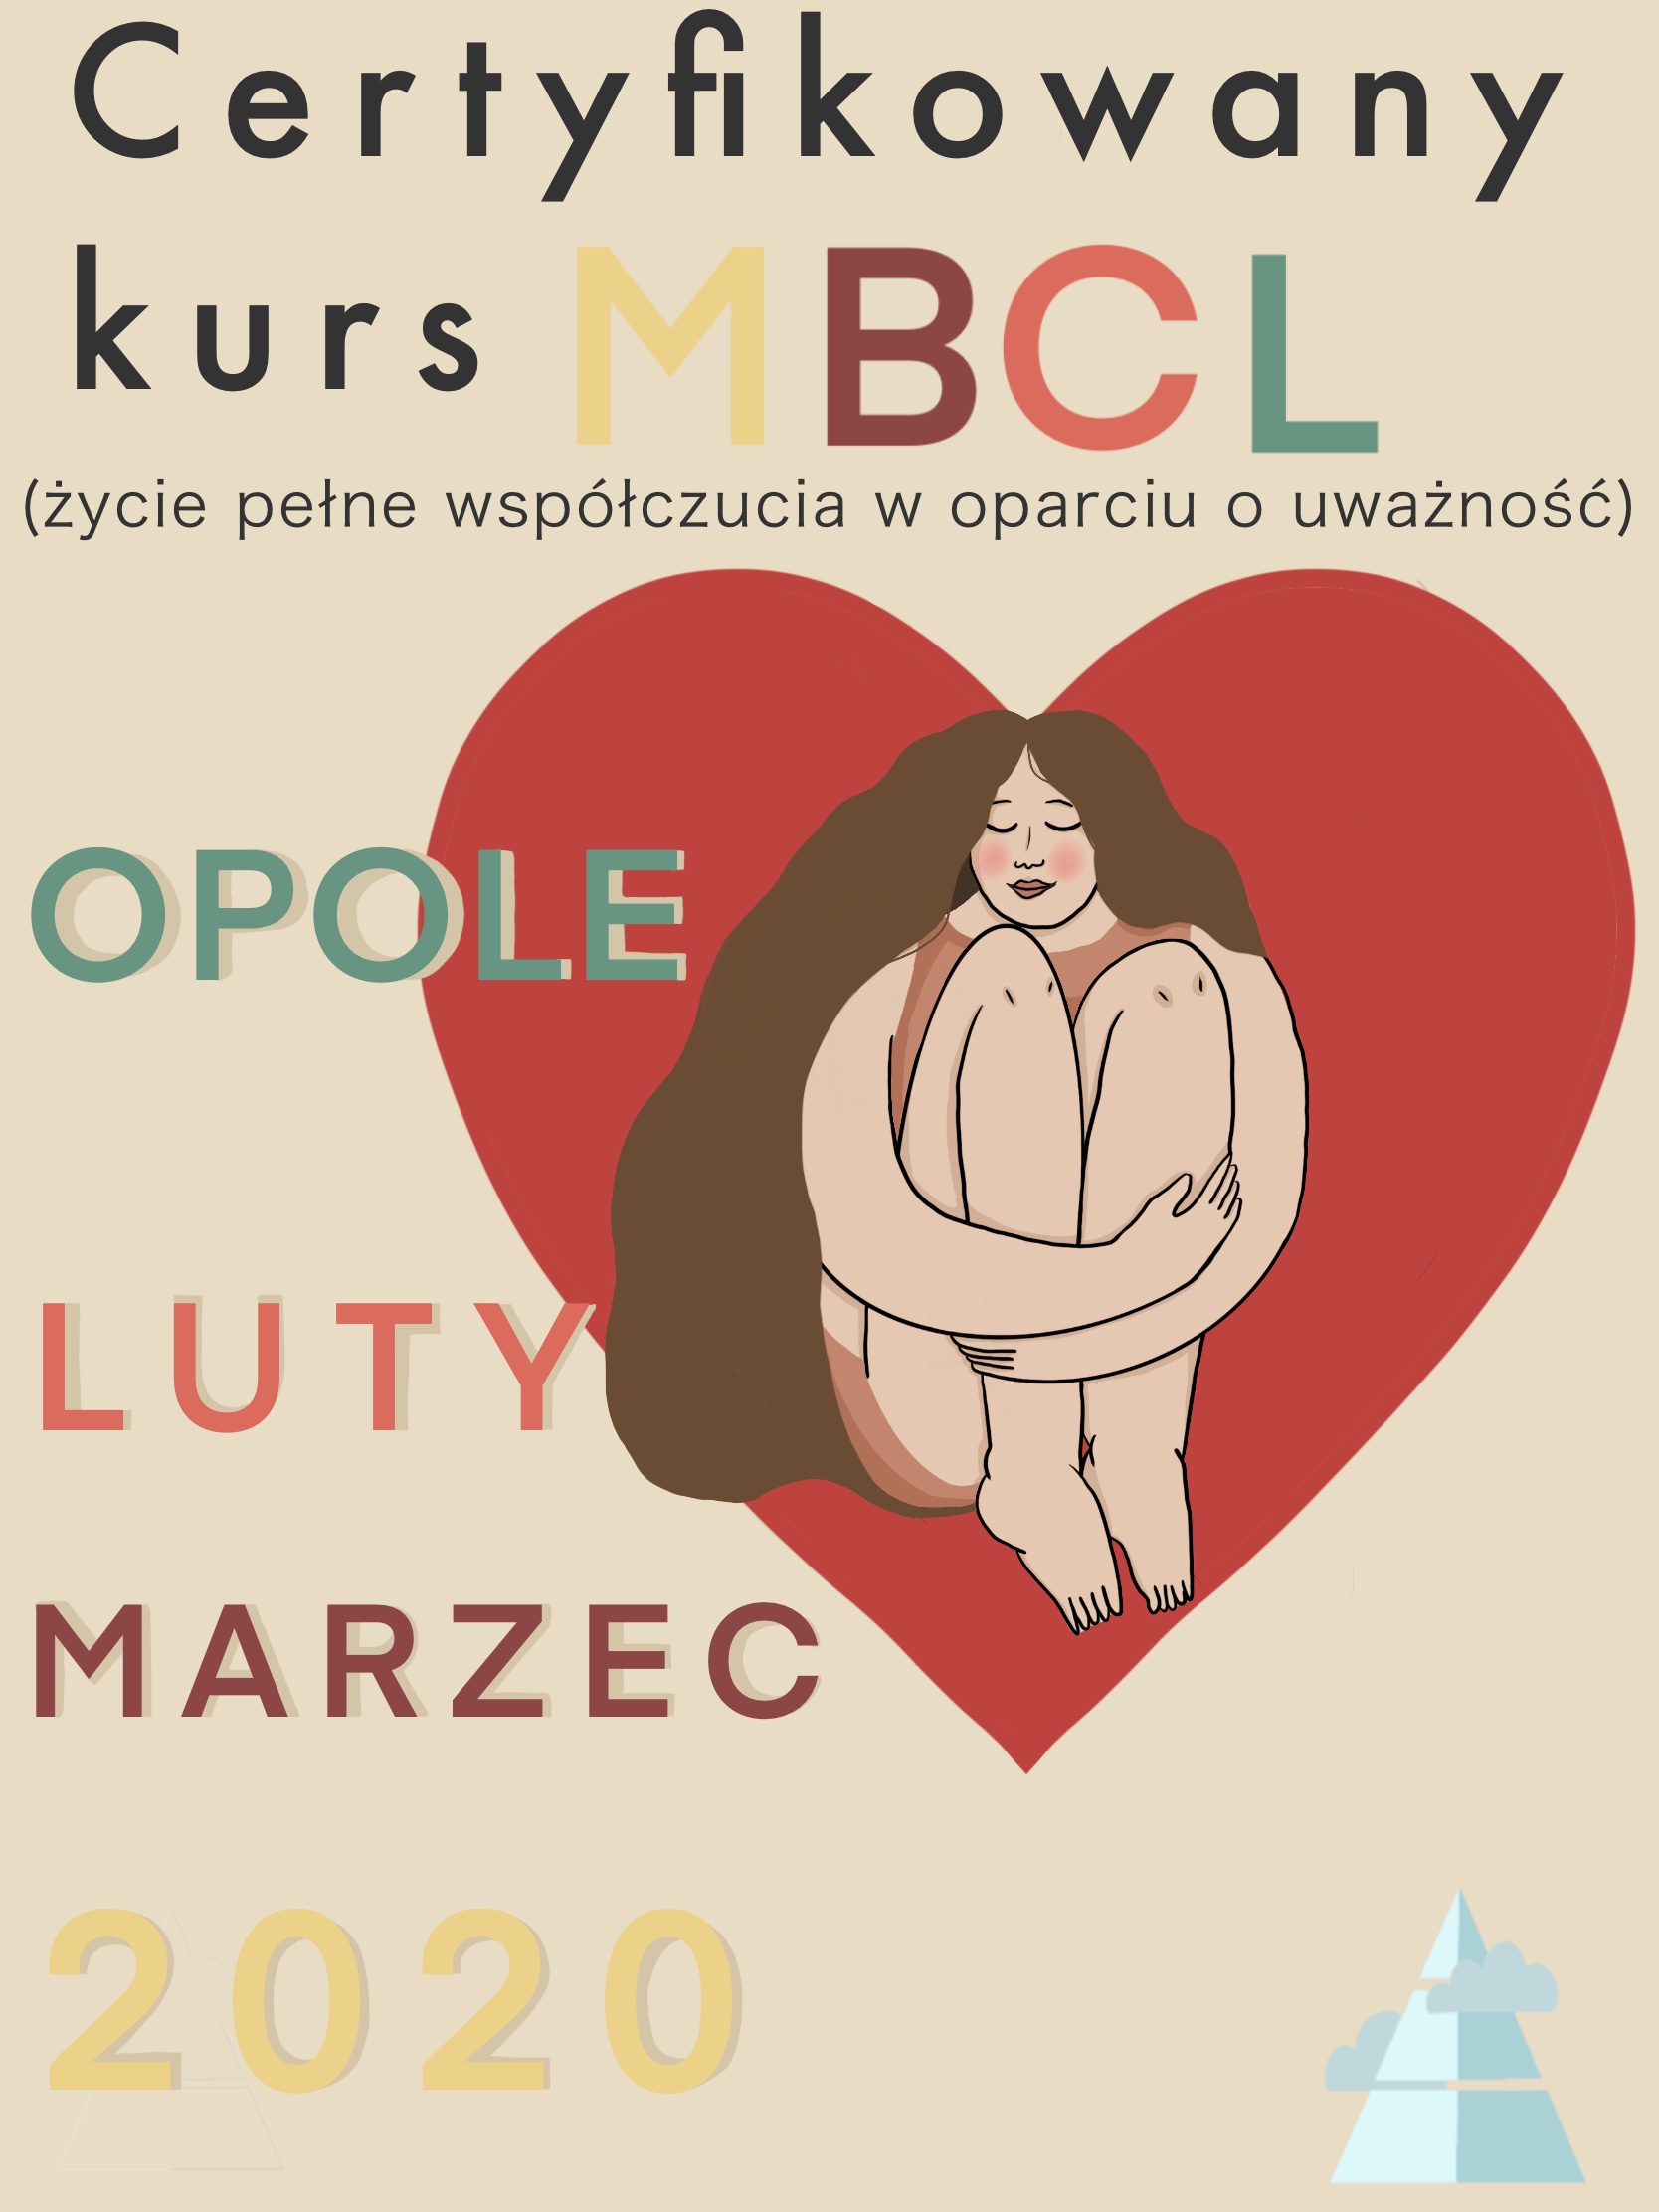 Pogłębiony kurs dla praktyków Mindfulness MBCL Opole 2020